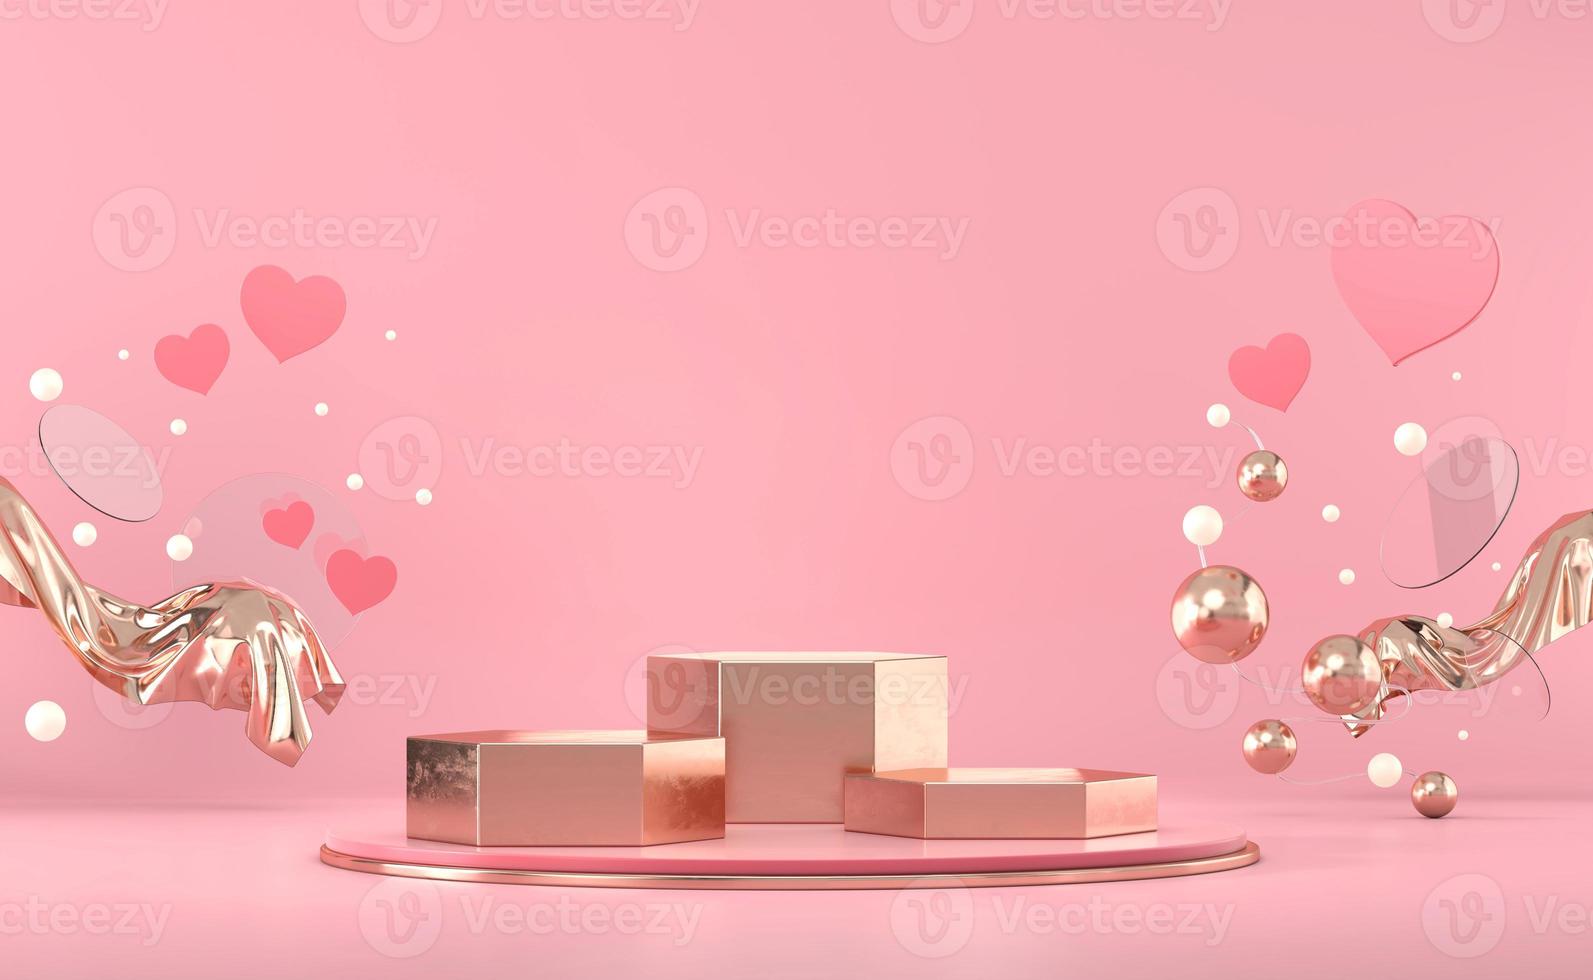 il podio del palcoscenico di san valentino deride con il rendering 3d della vetrina dell'esposizione del prodotto della decorazione del cuore foto